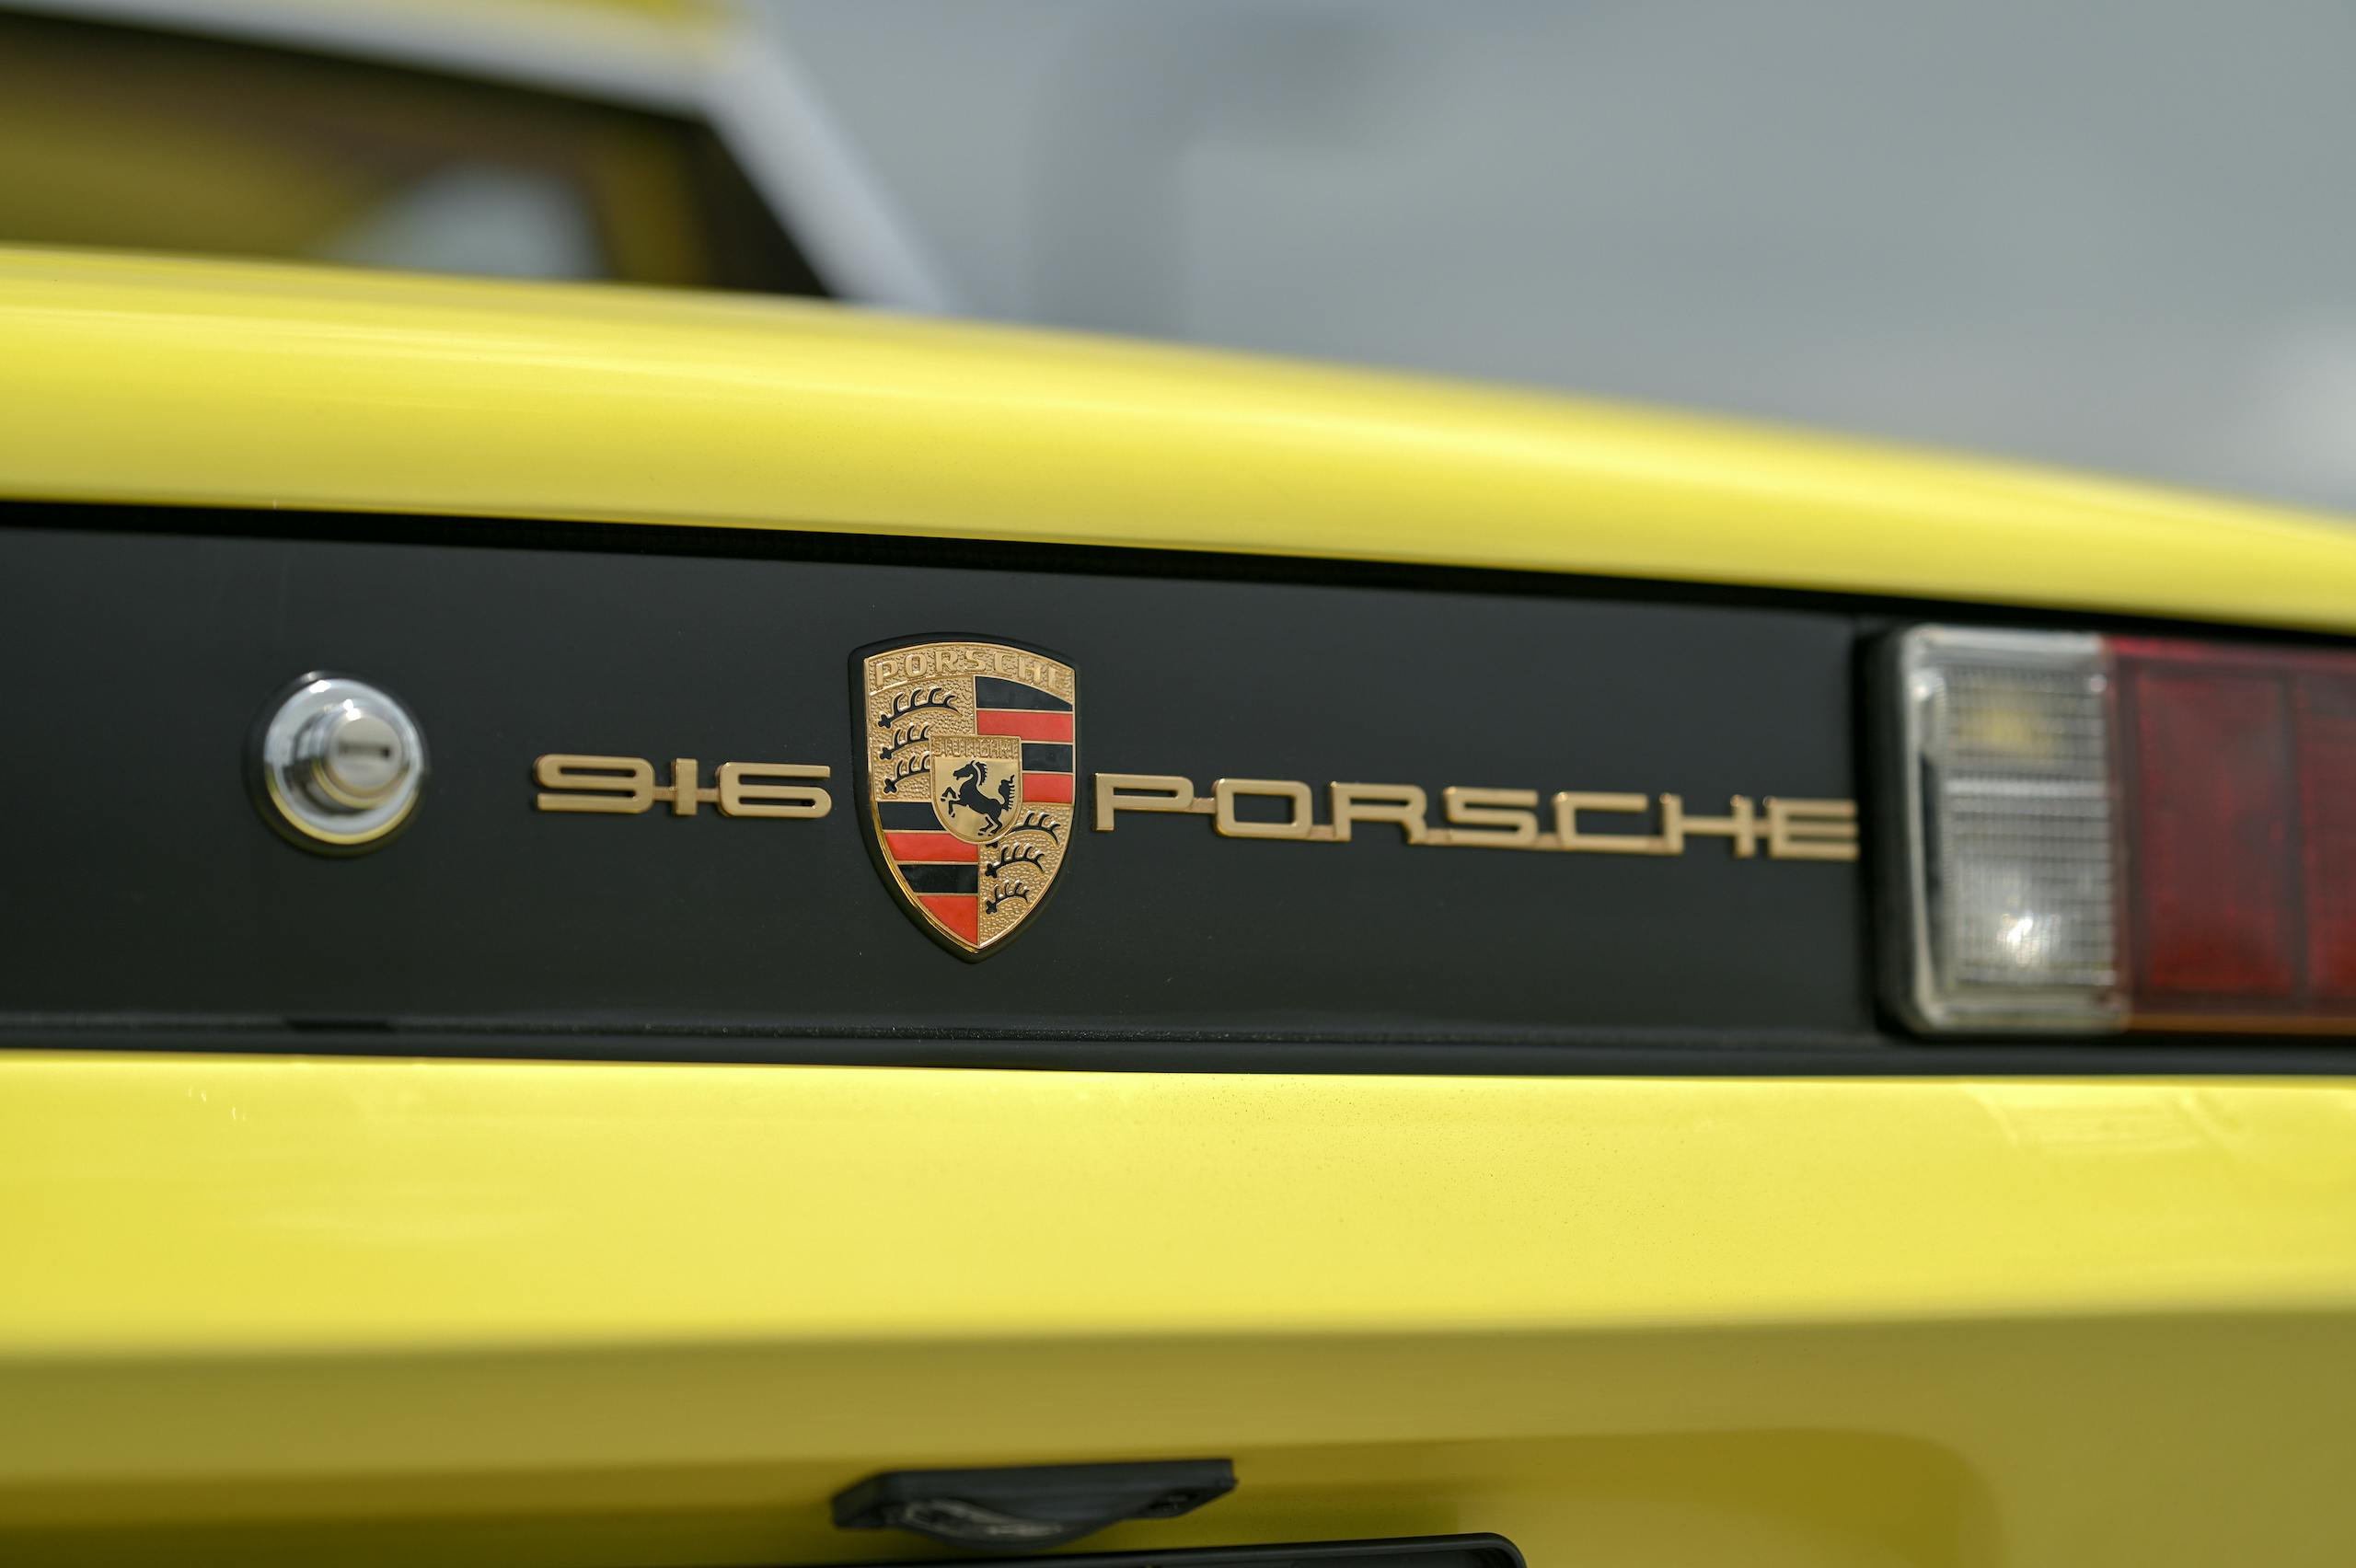 1972 Porsche 916 emblem